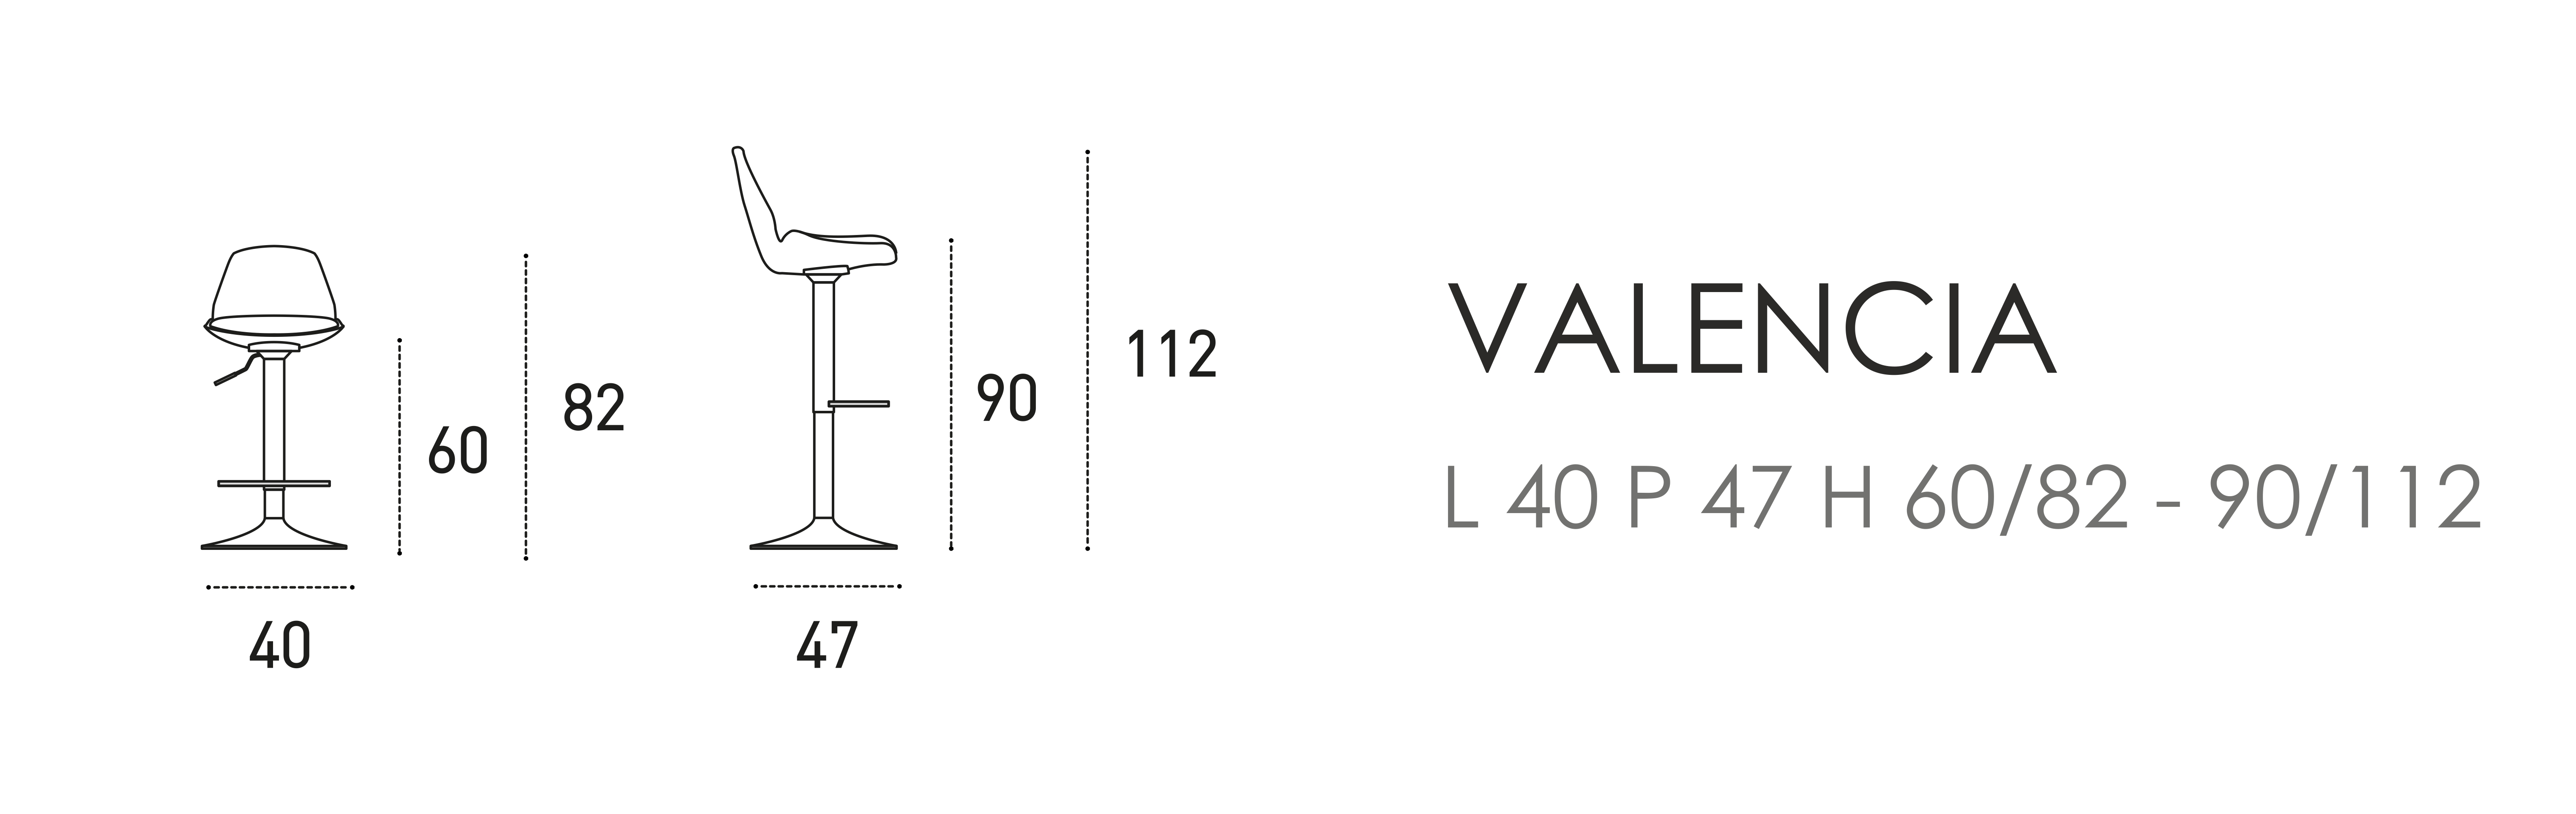 Valencia L 40 P 47 H 60/82 - 90/112